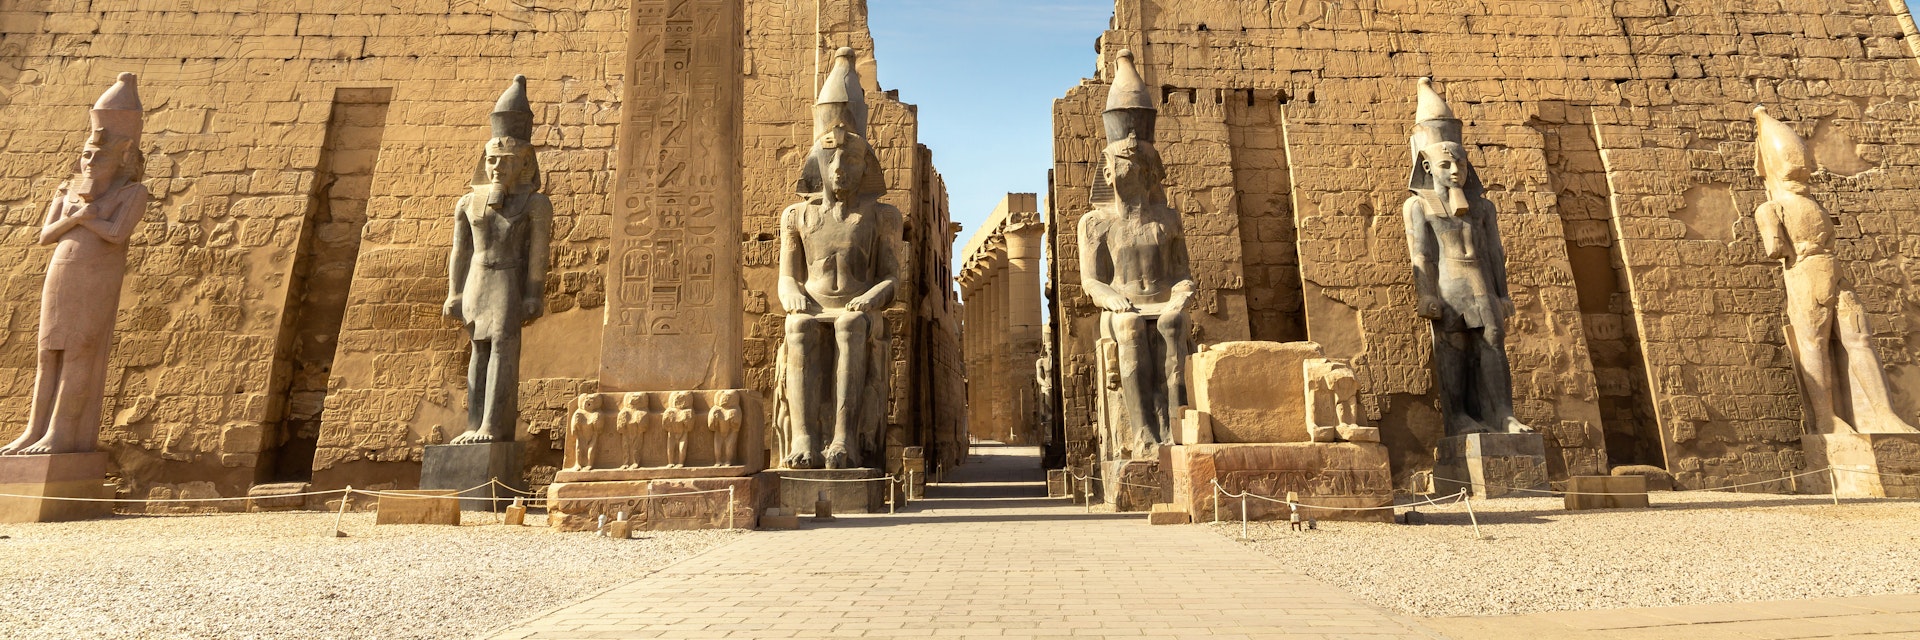 Luxor Temple.